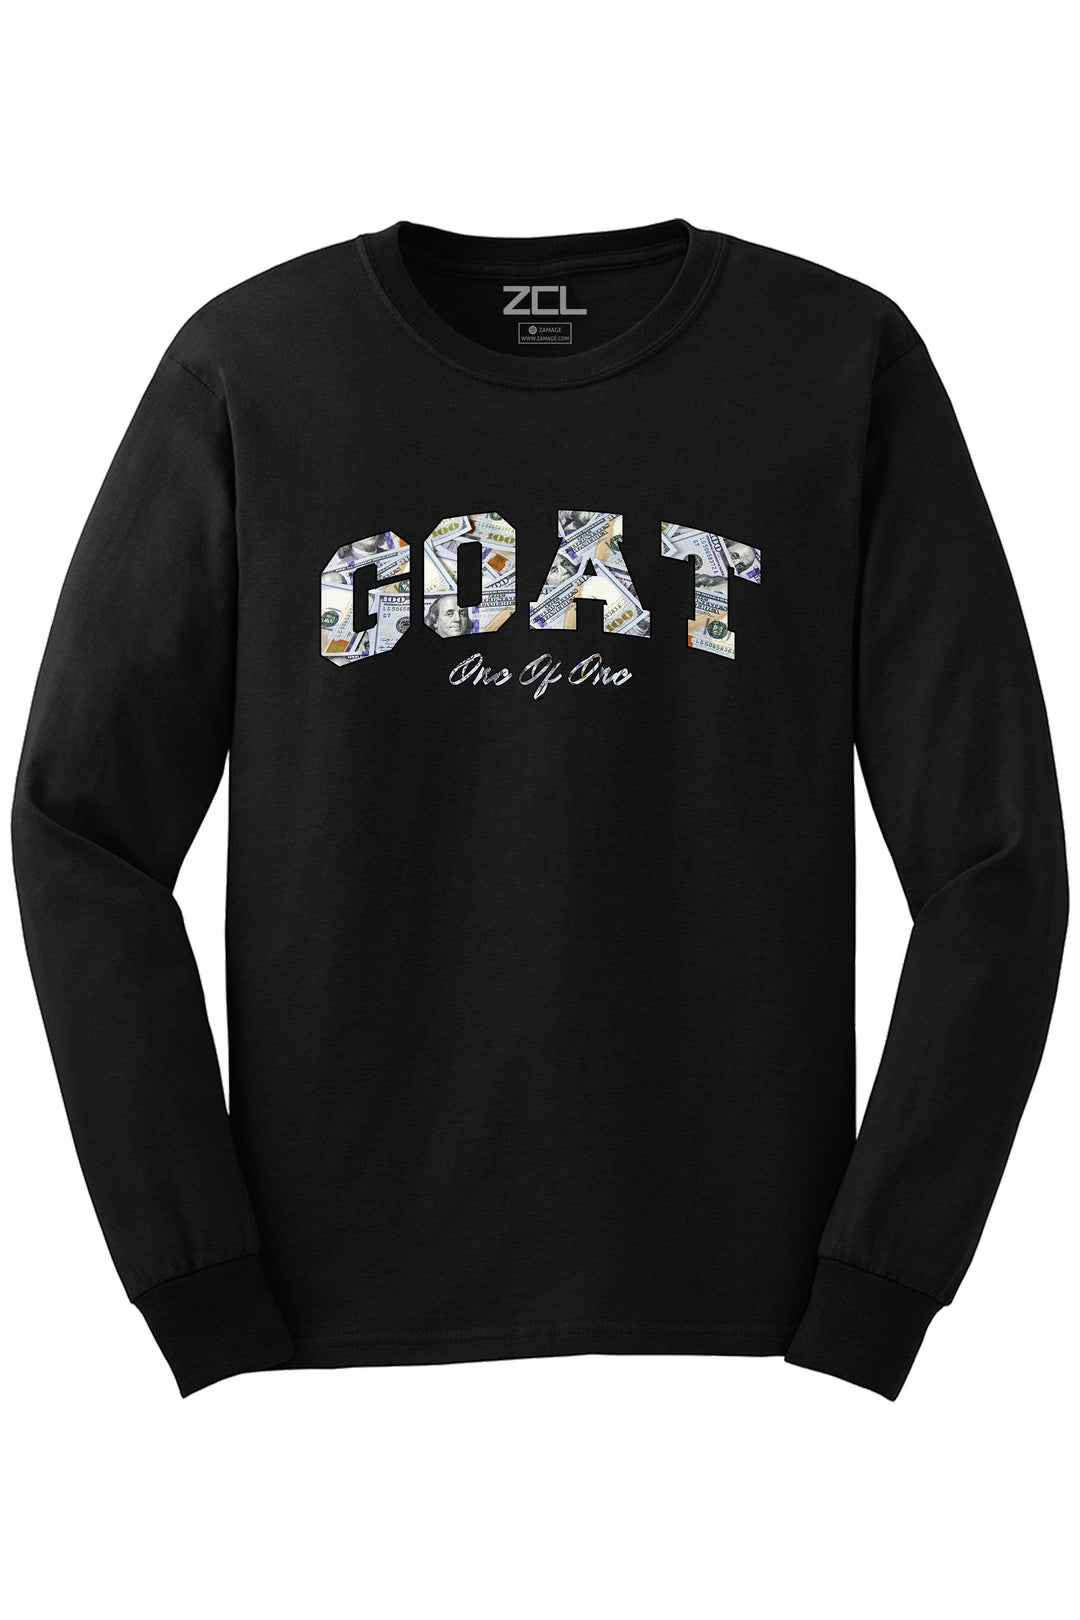 Money Goat Long Sleeve Tee (Multi Color Logo) Limited - Zamage